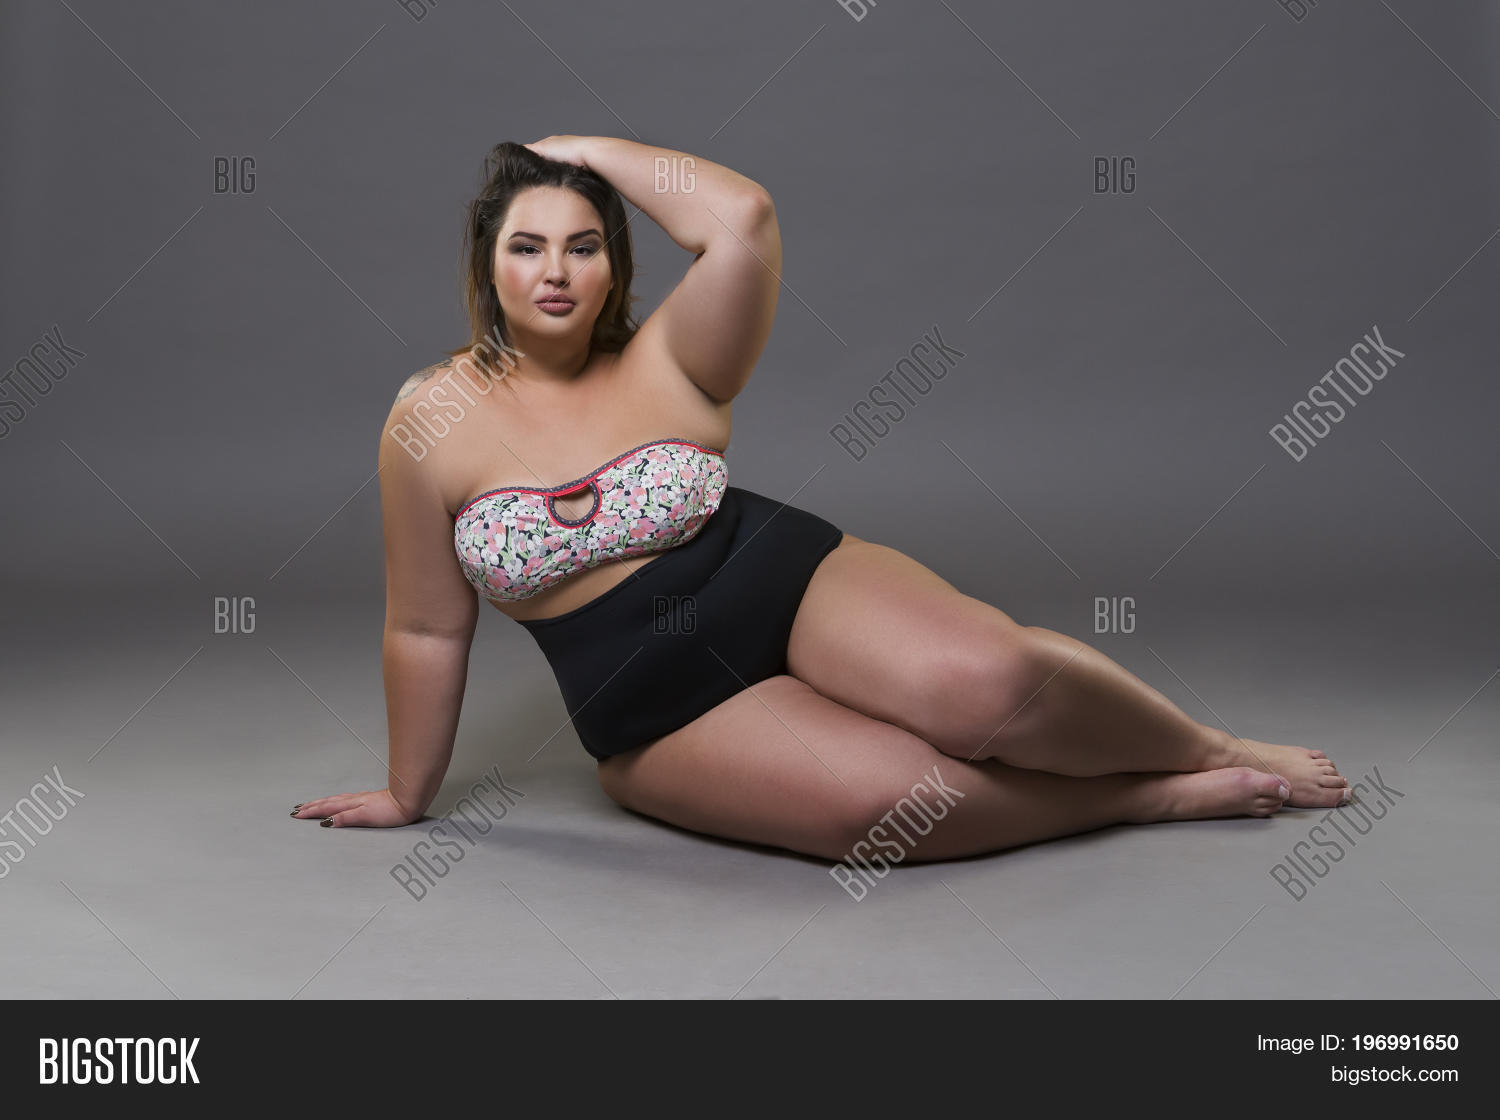 ashanti john add photo fat lady sexy